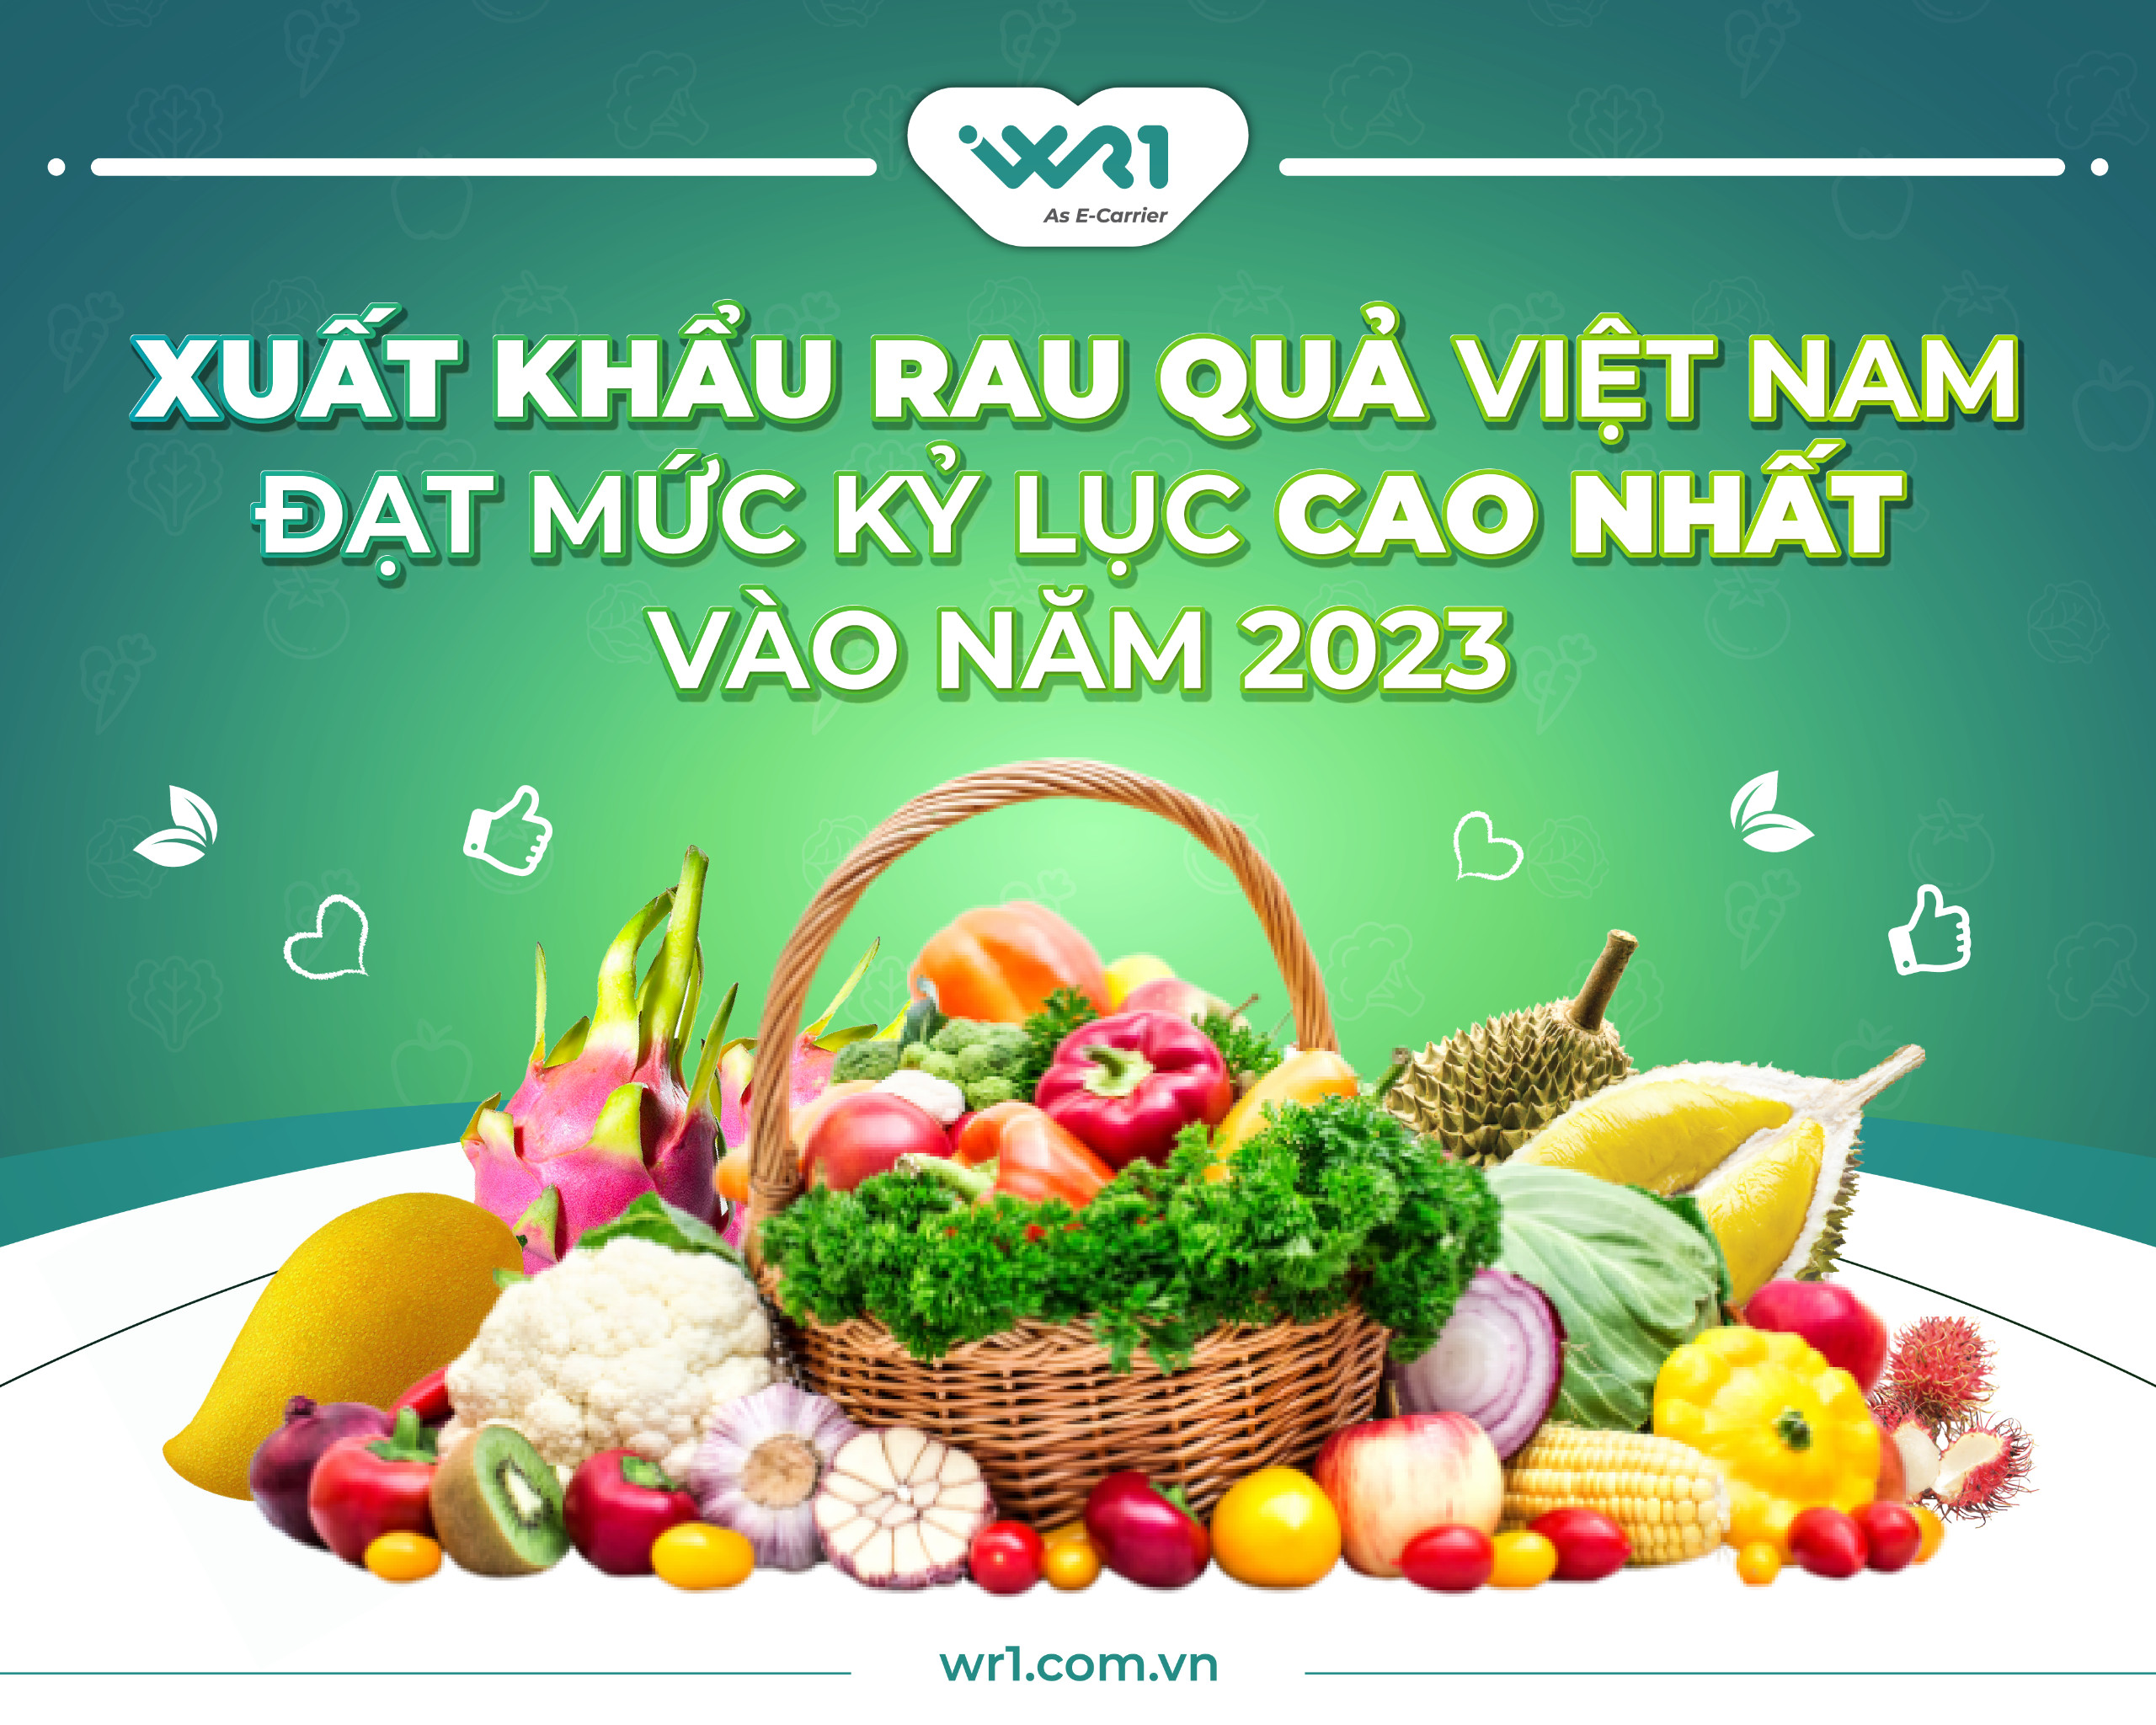 Xuất khẩu rau quả Việt Nam đạt mức kỷ lục cao nhất vào năm 2023